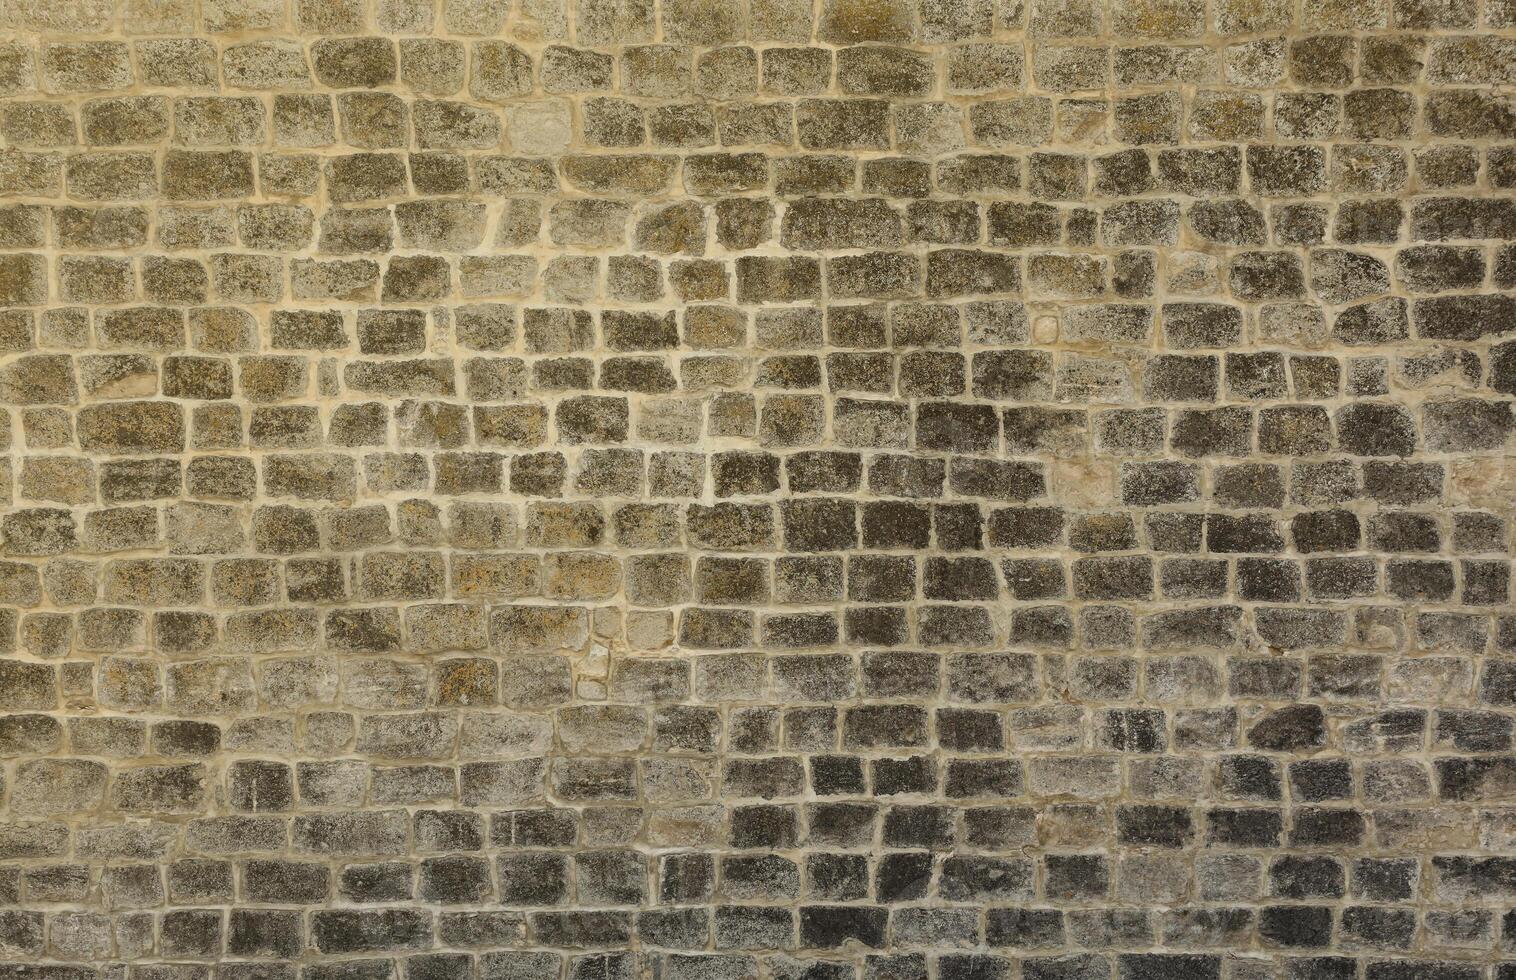 molto vecchio mattone pietra parete di castello o fortezza di 18 ° secolo. pieno telaio parete con obsoleto sporco e Cracked mattoni foto